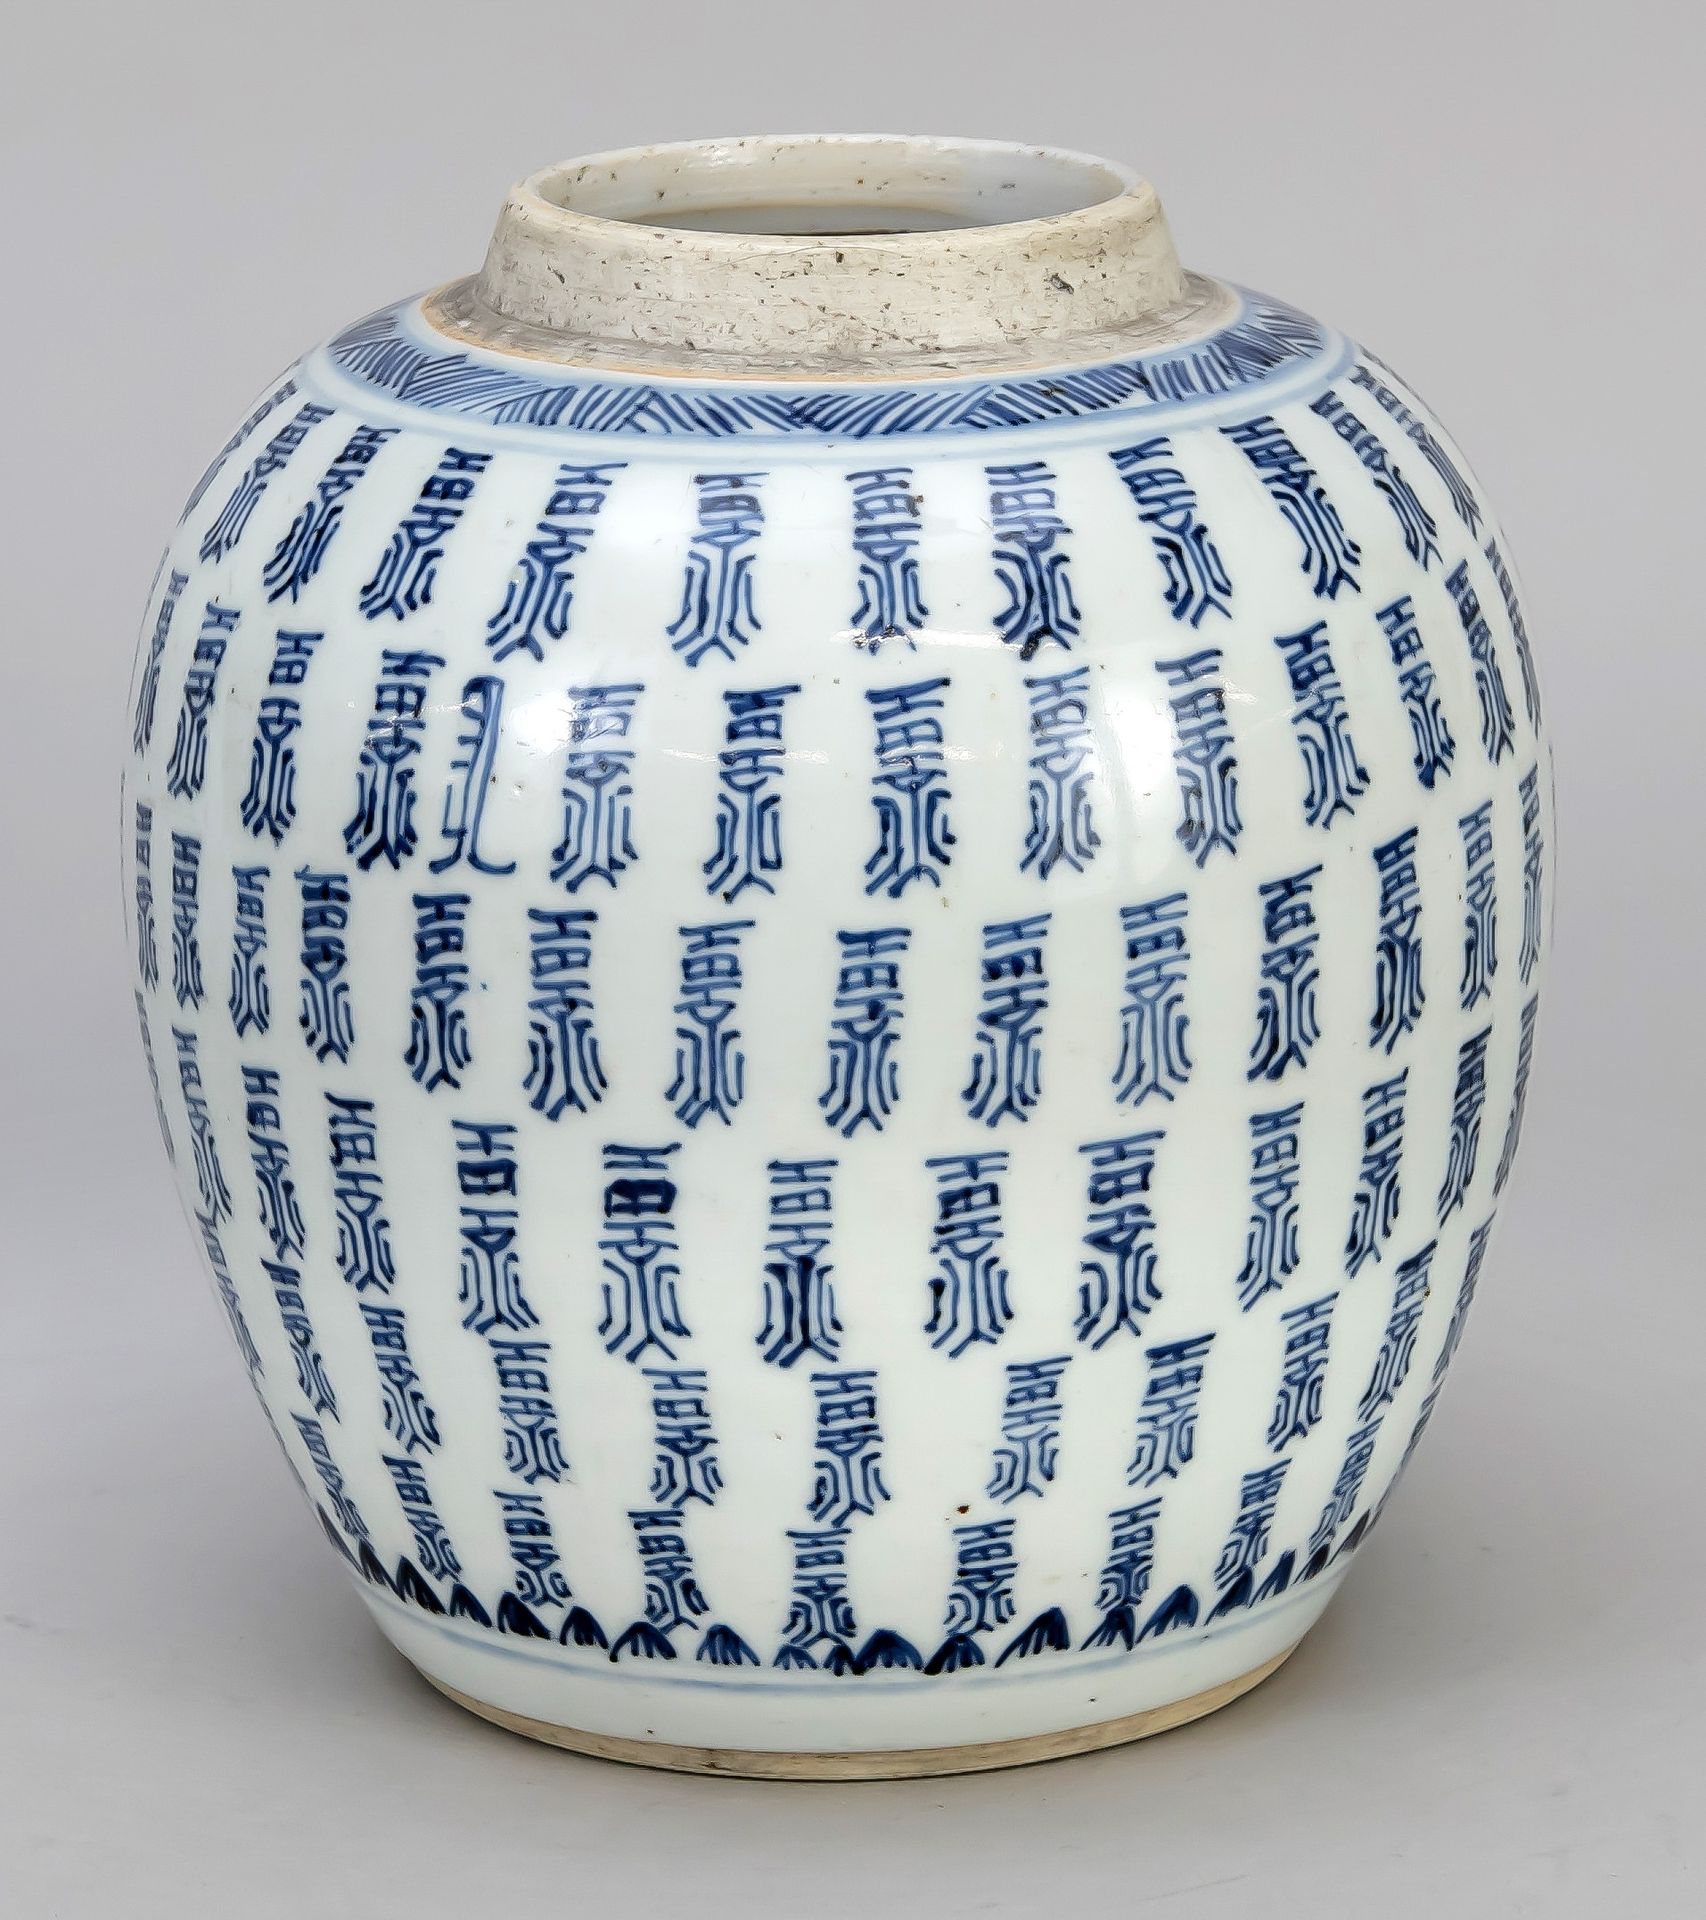 Null 姜壶，中国，19世纪，四周装饰钴蓝色的6个注册字，底部有一个双圈，高19厘米